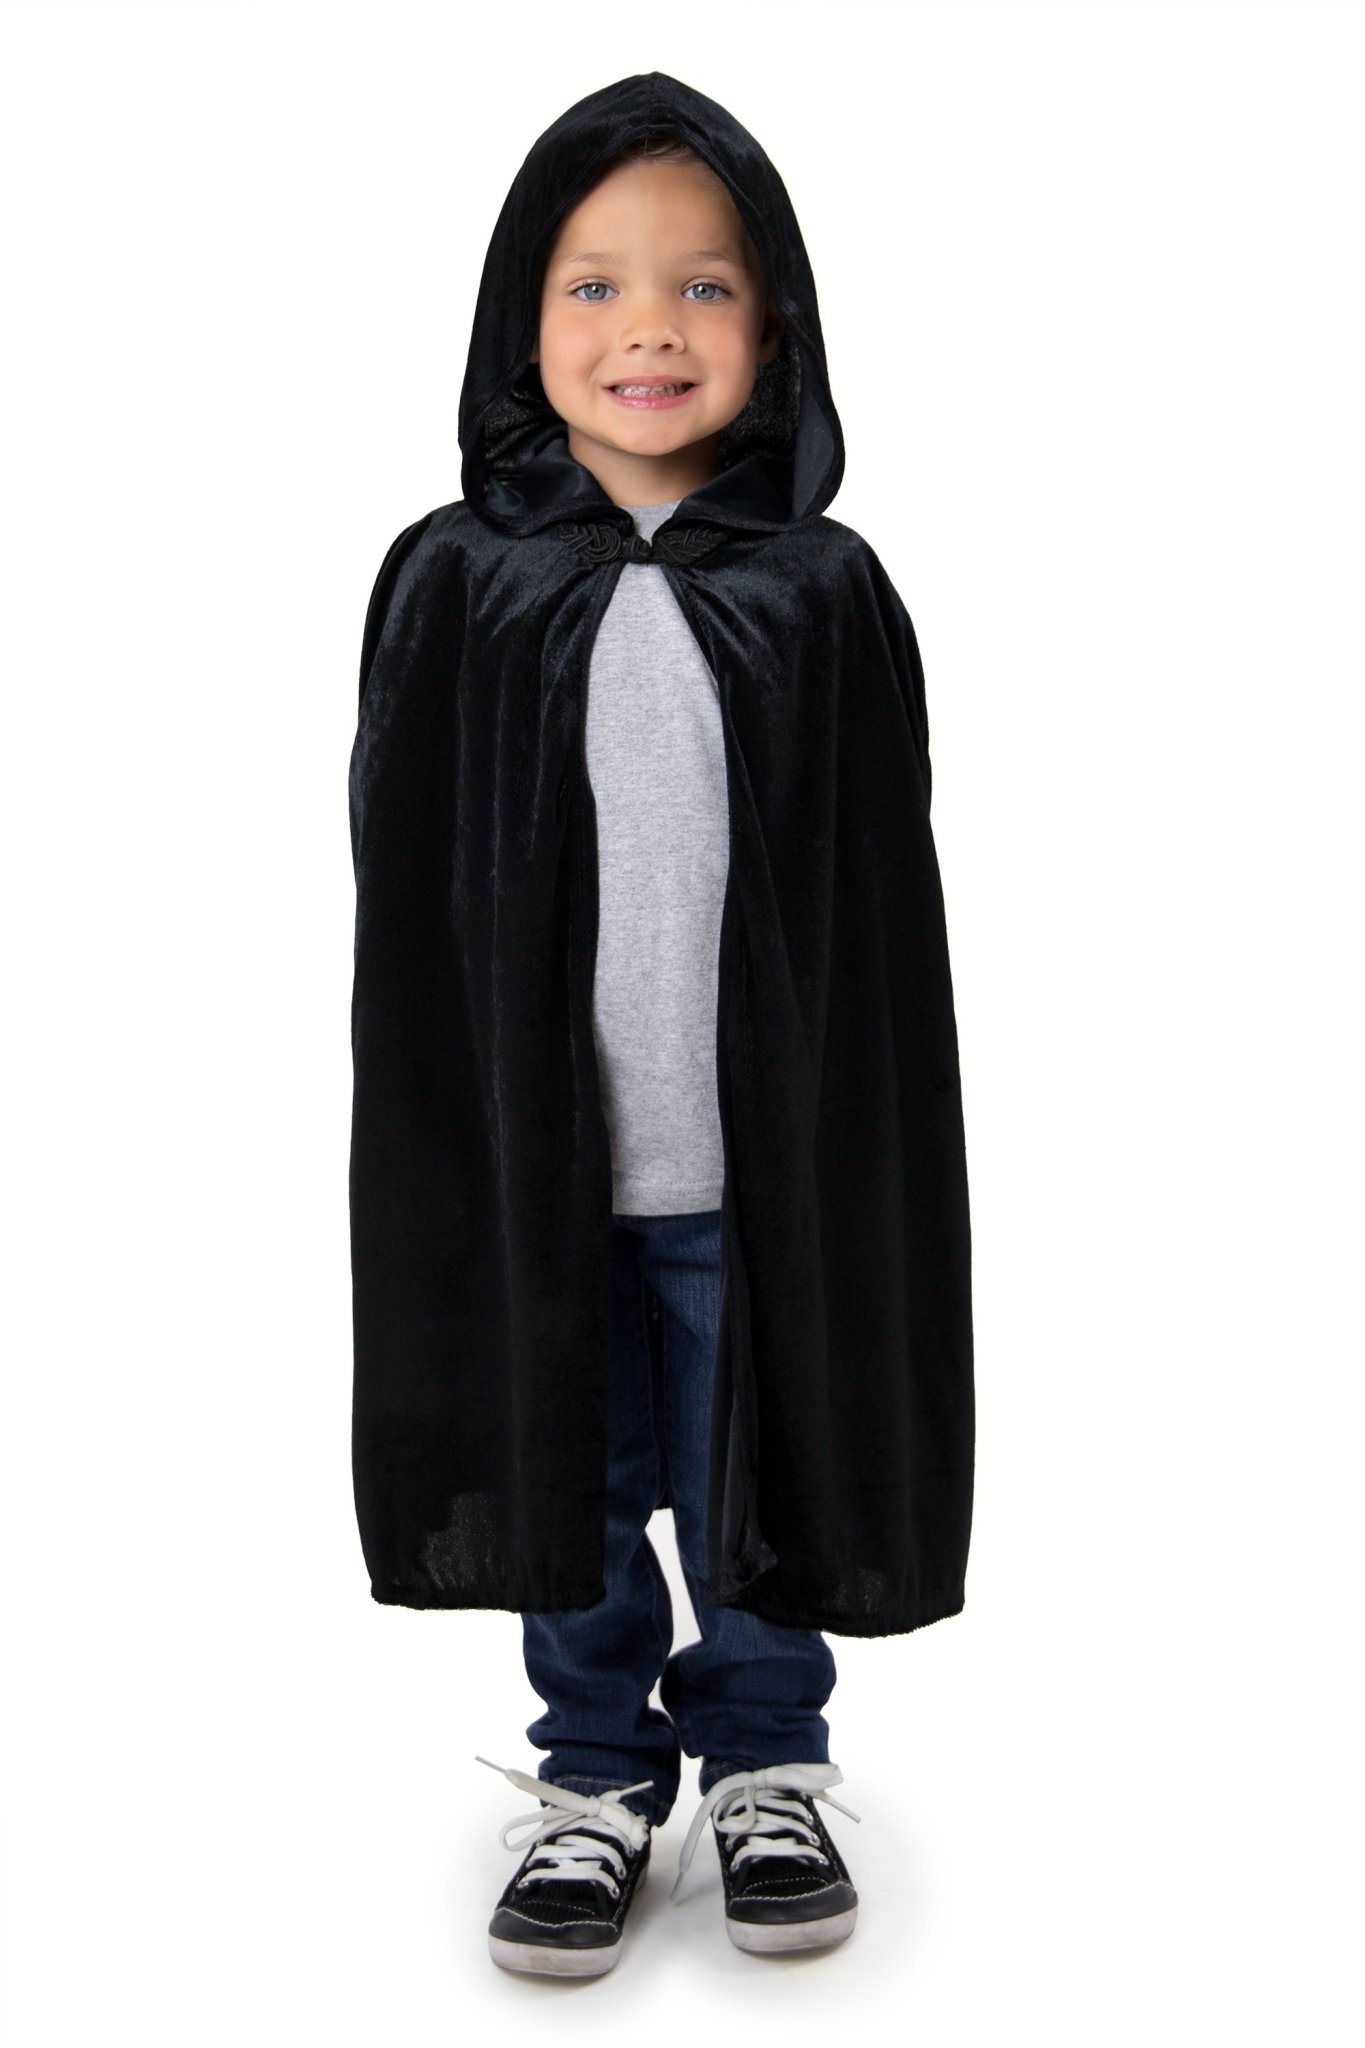 Little Adventures Child Cloak Black - Large/X-Large